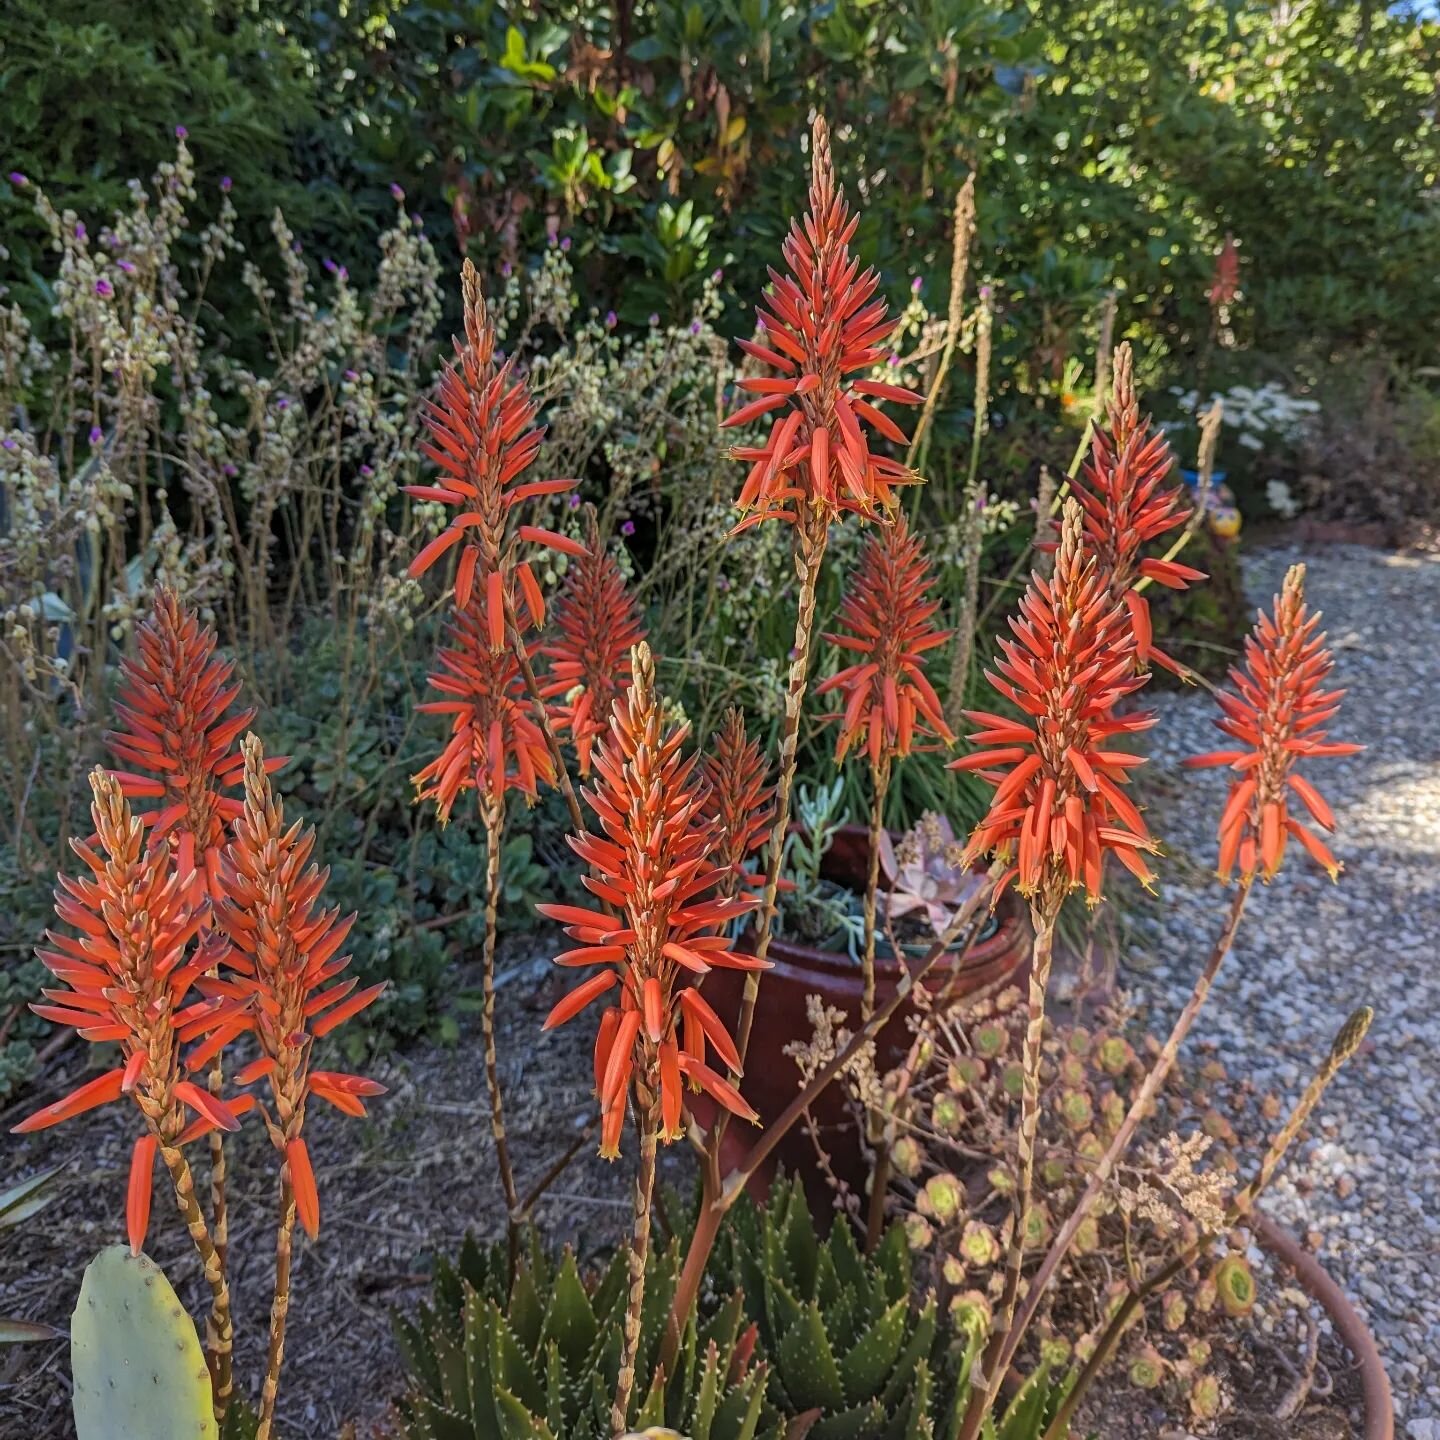 Aloe nobilis finally having its moment to shine.

#aloenobilis